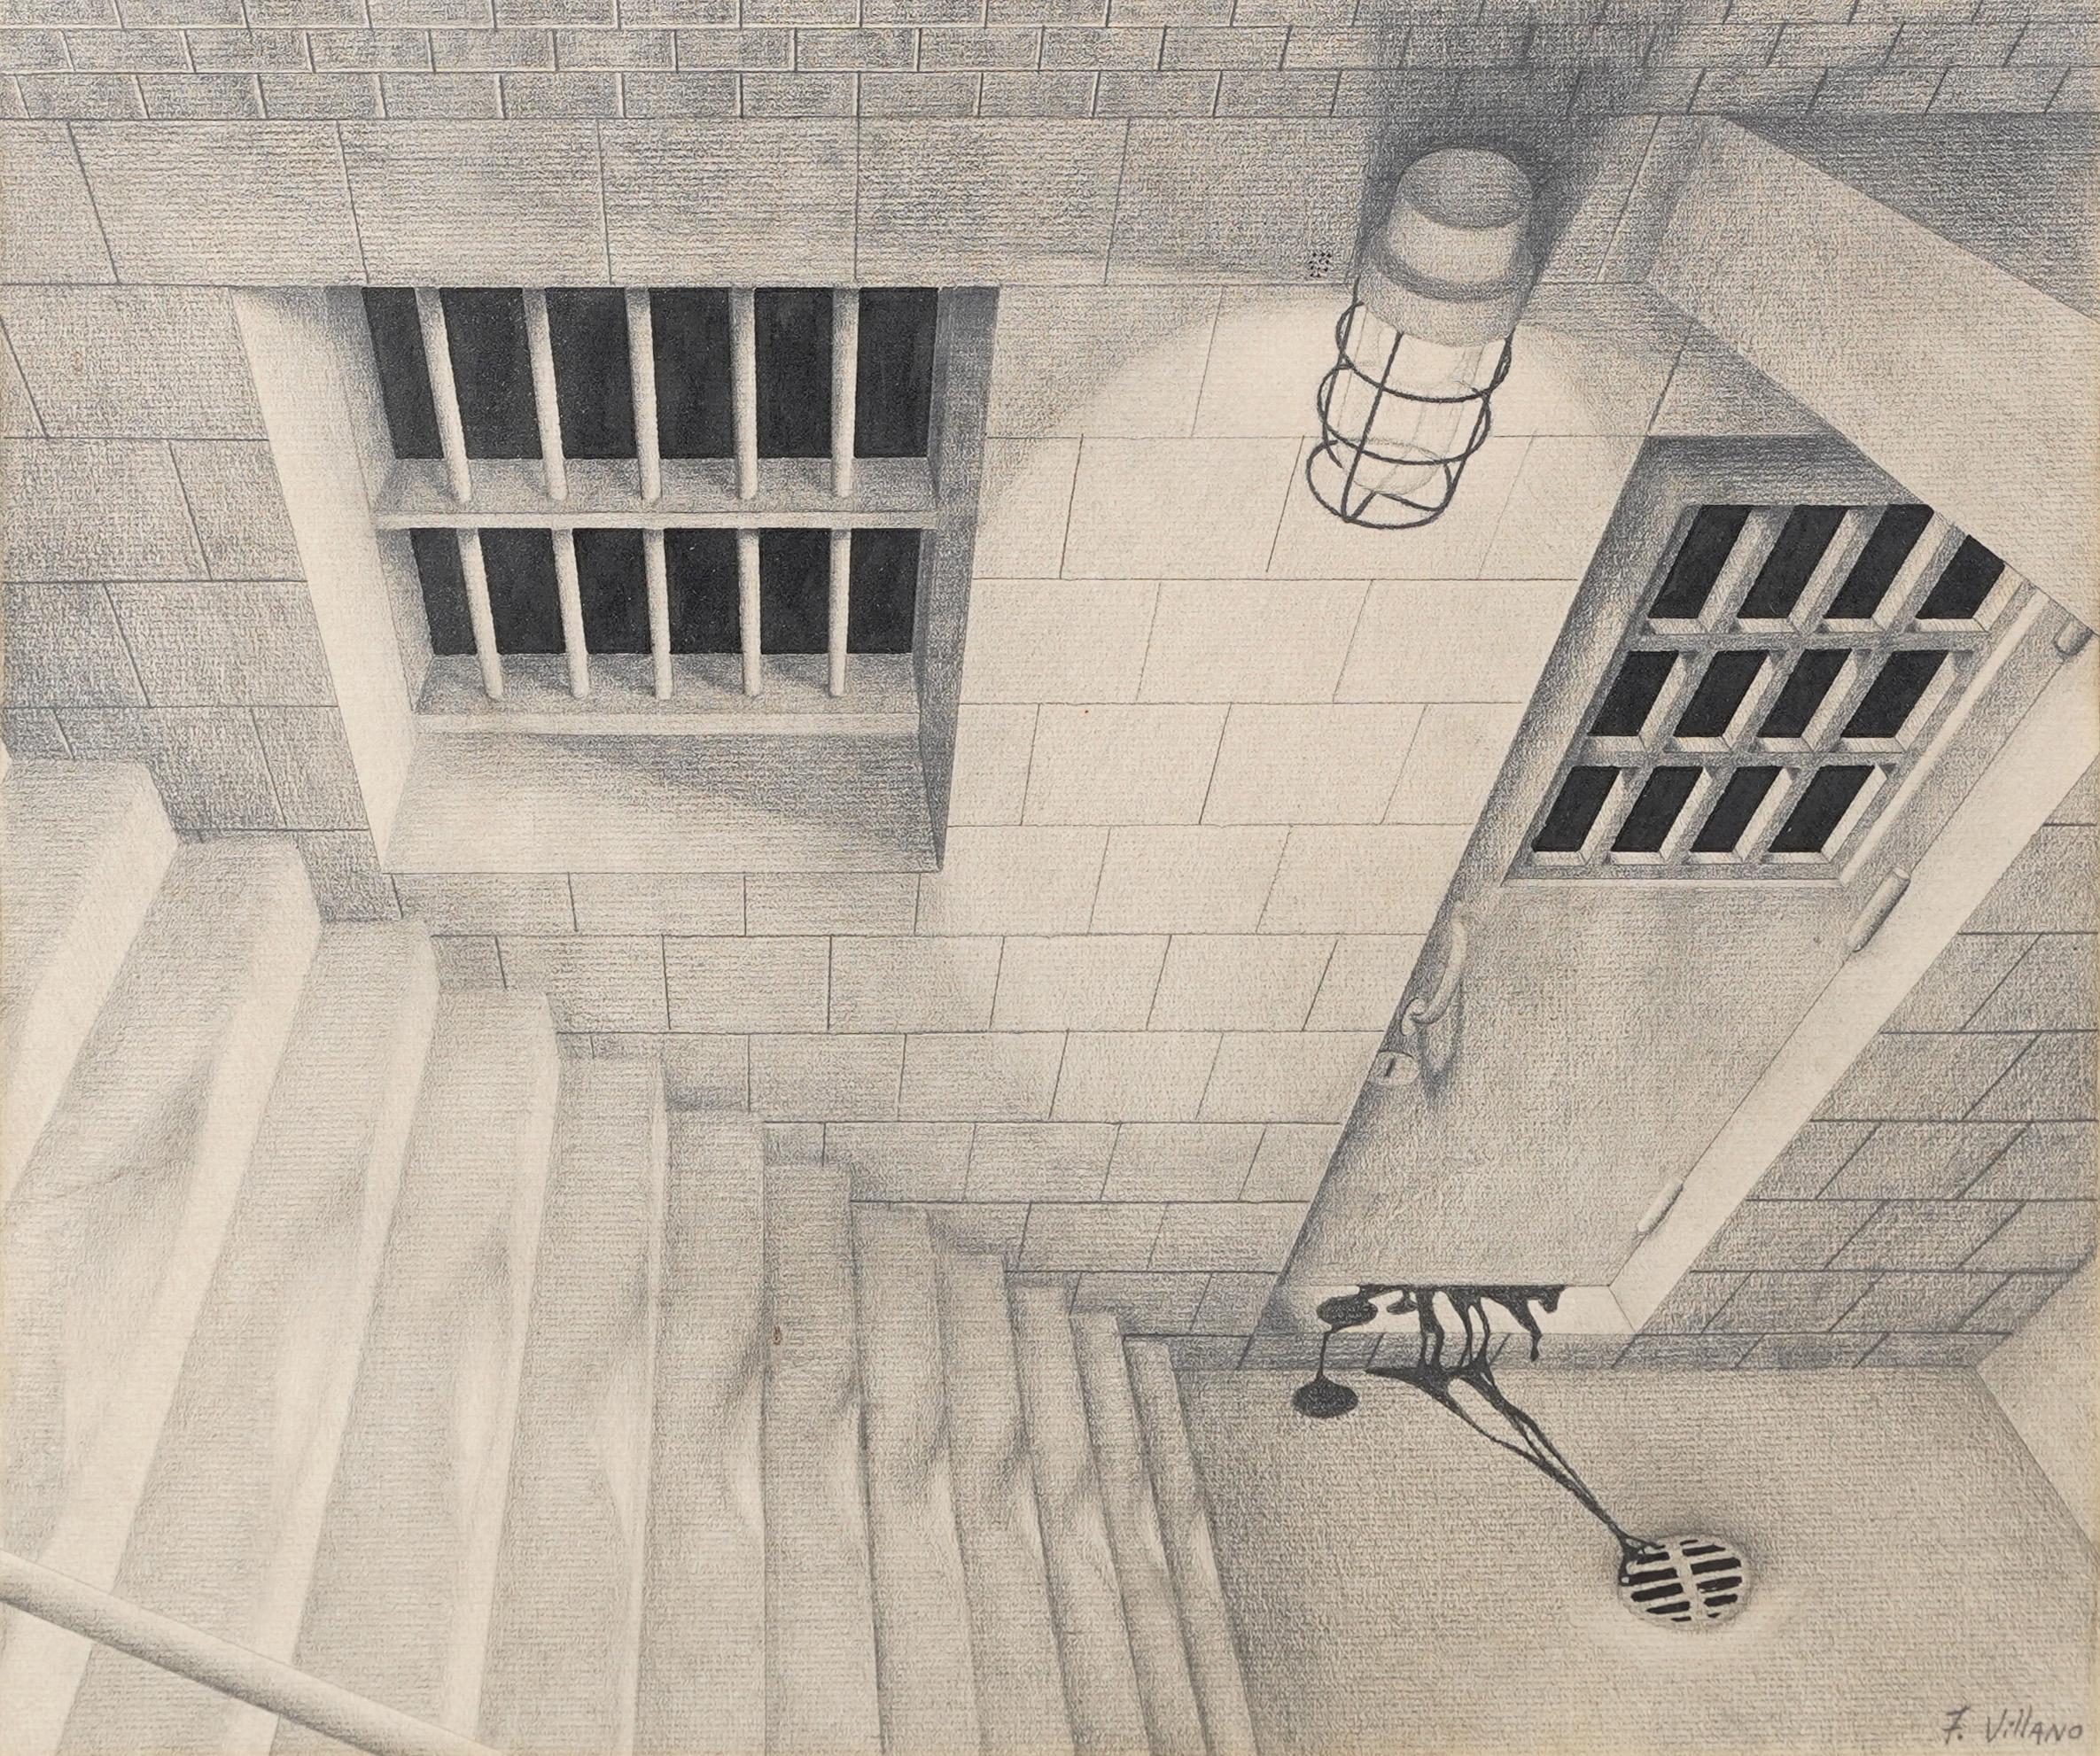 macabre prison